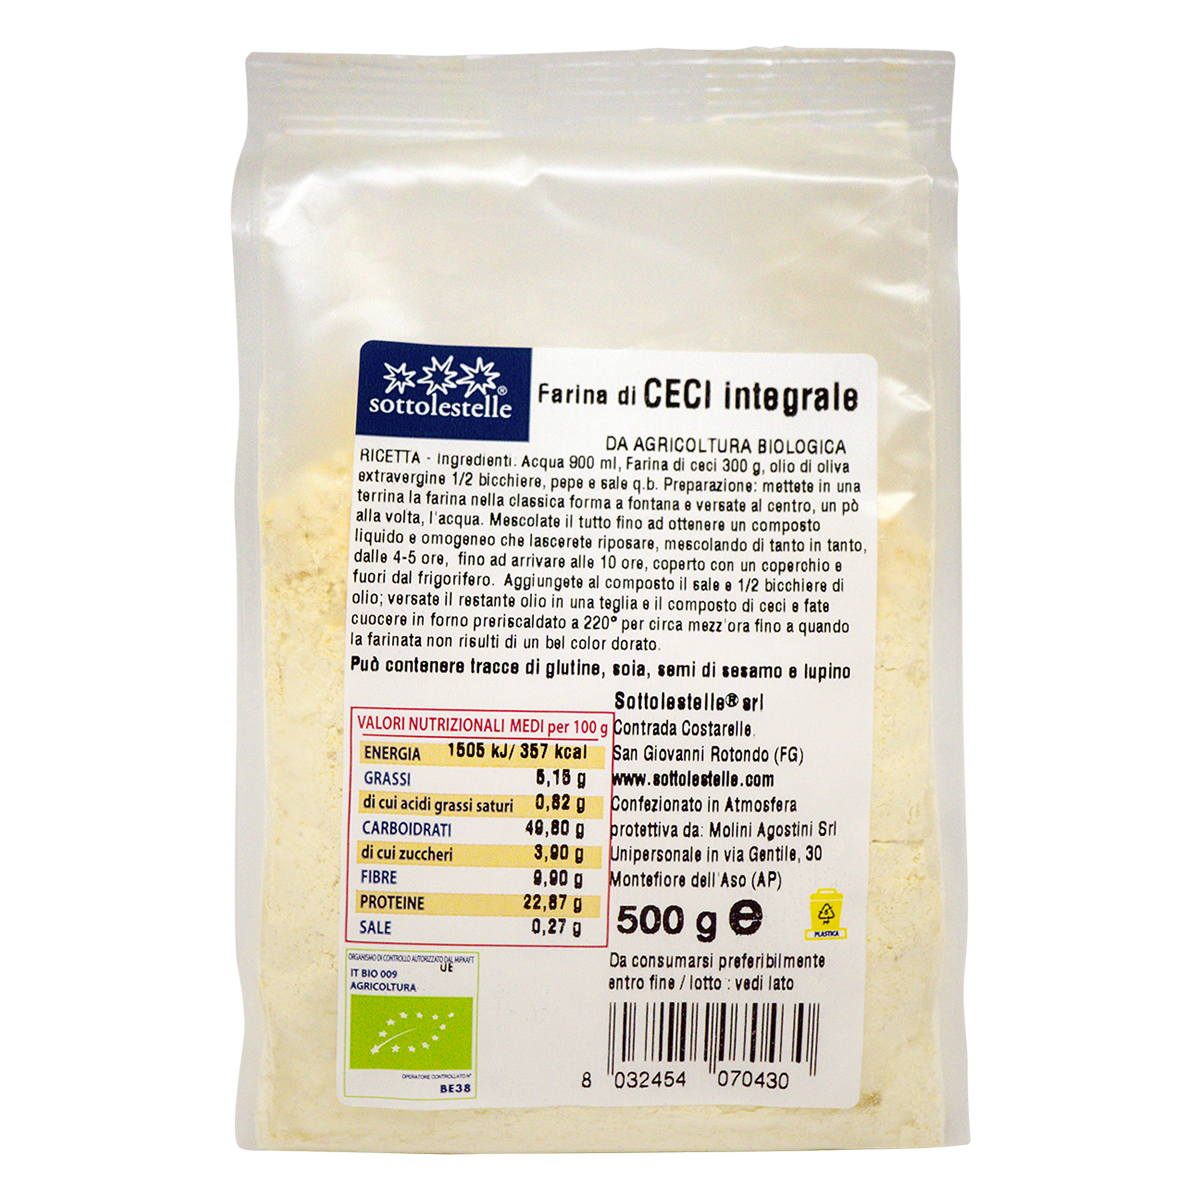 Bột đậu gà nguyên cám hữu cơ Sottolestelle 500g Organic Chickpea Flour